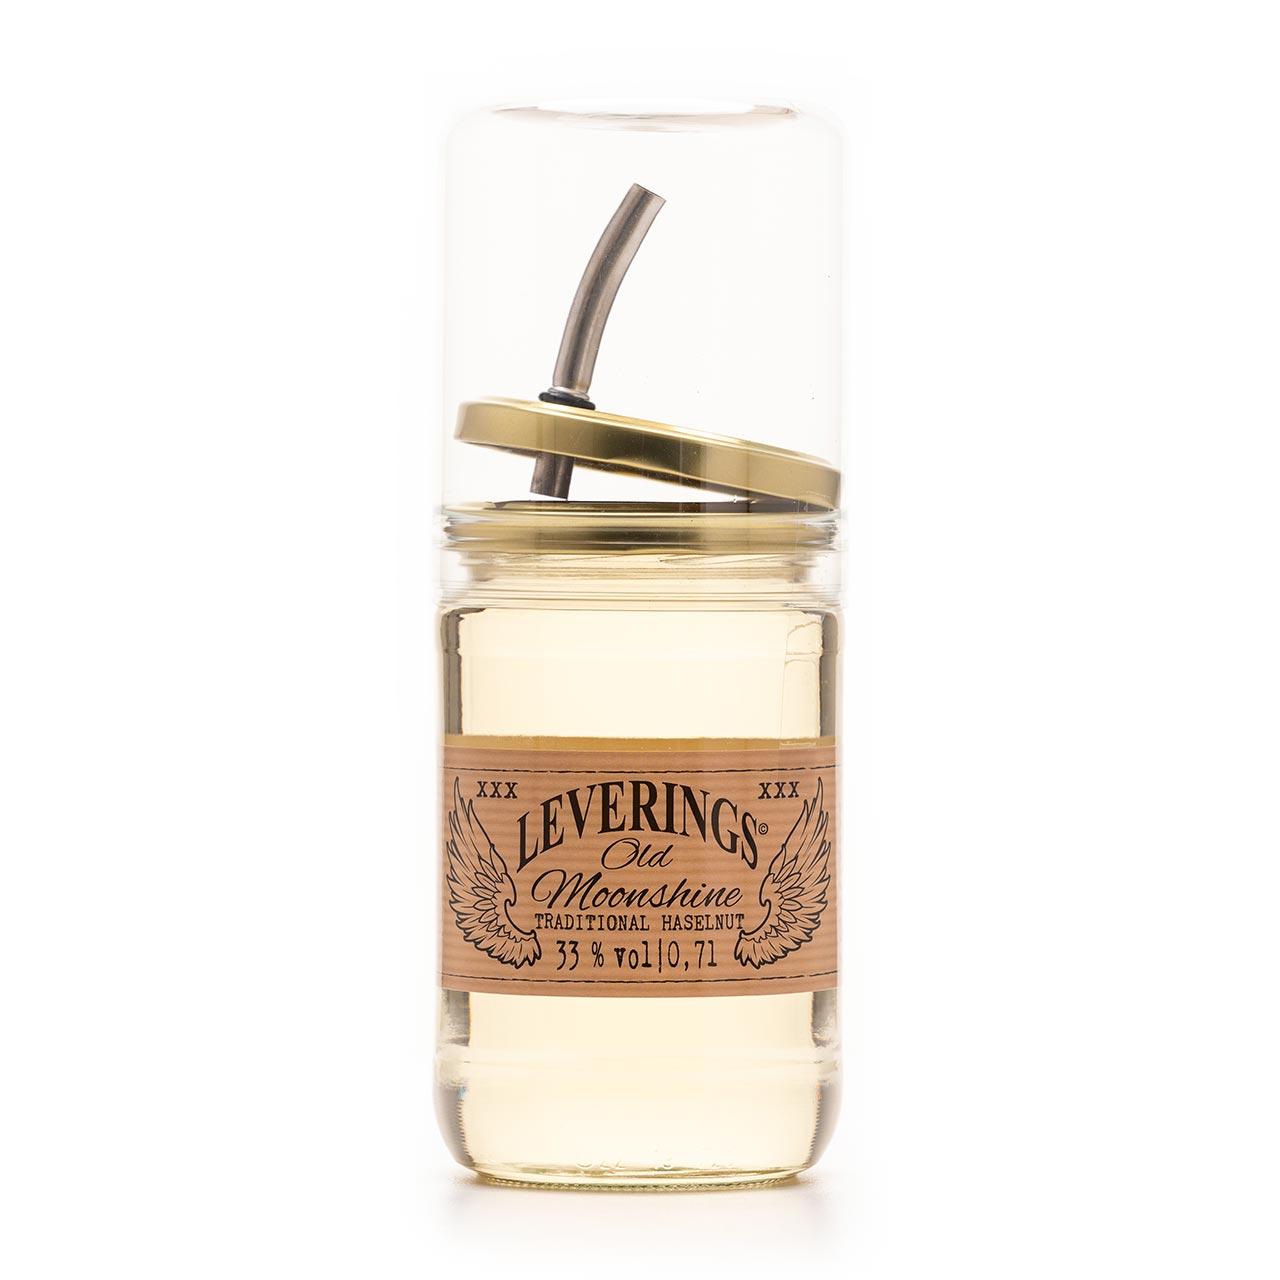 Leverings Old Moonshine - Traditional Hazelnut 33 % Vol., 0,7 Liter